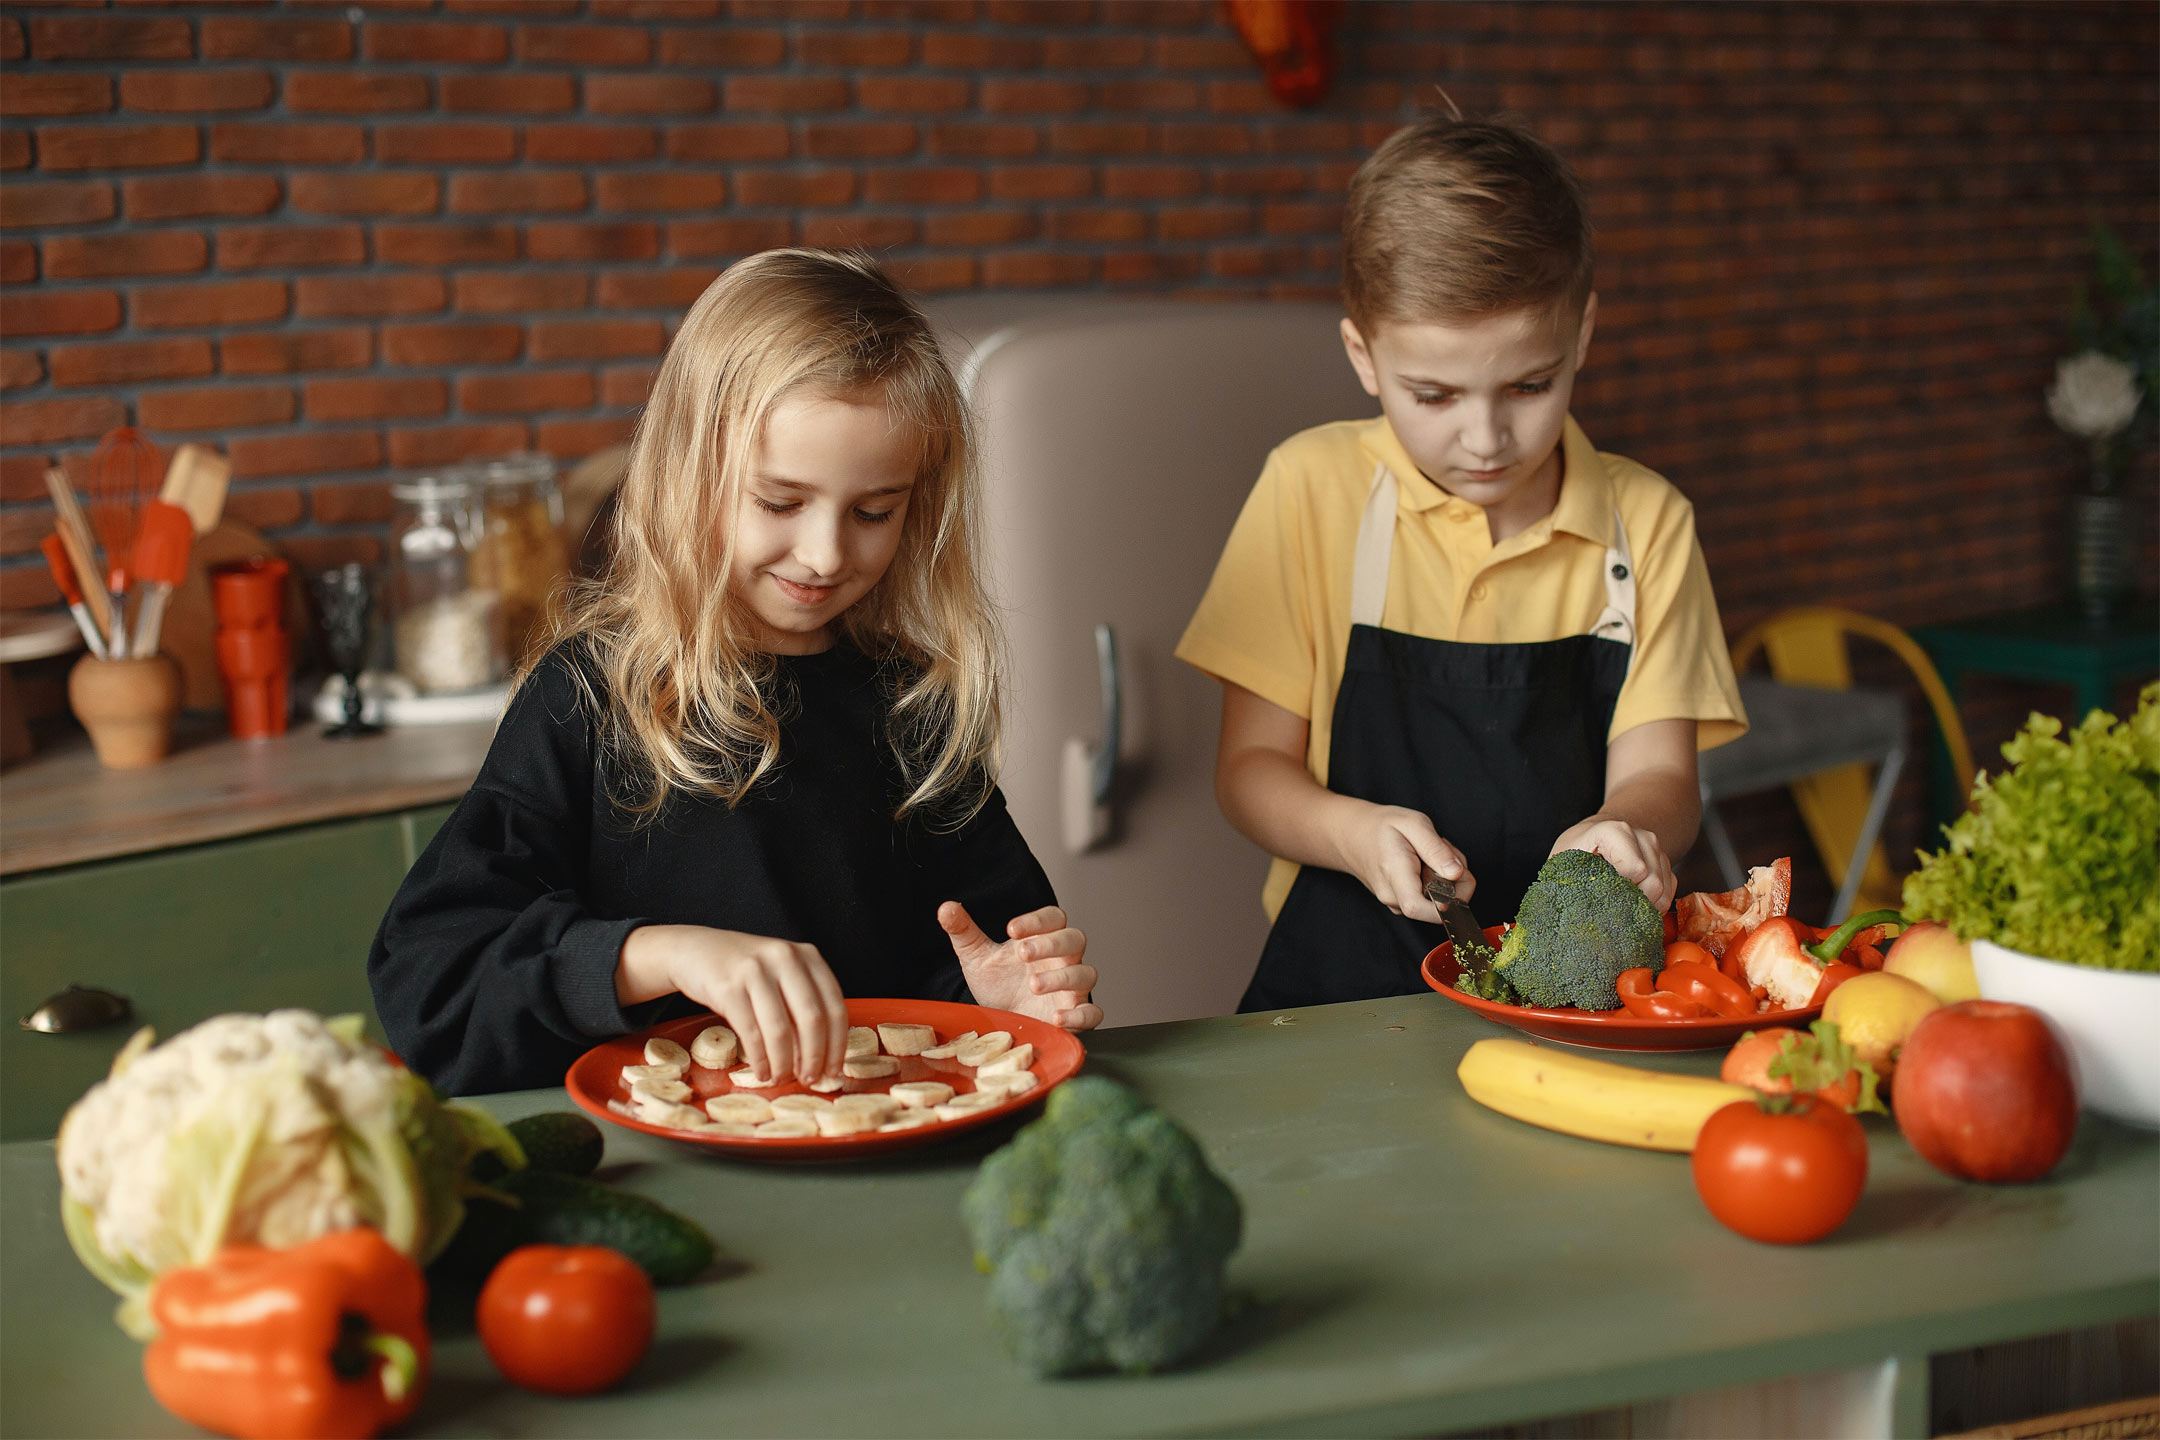 children-slicing-vegetables2160